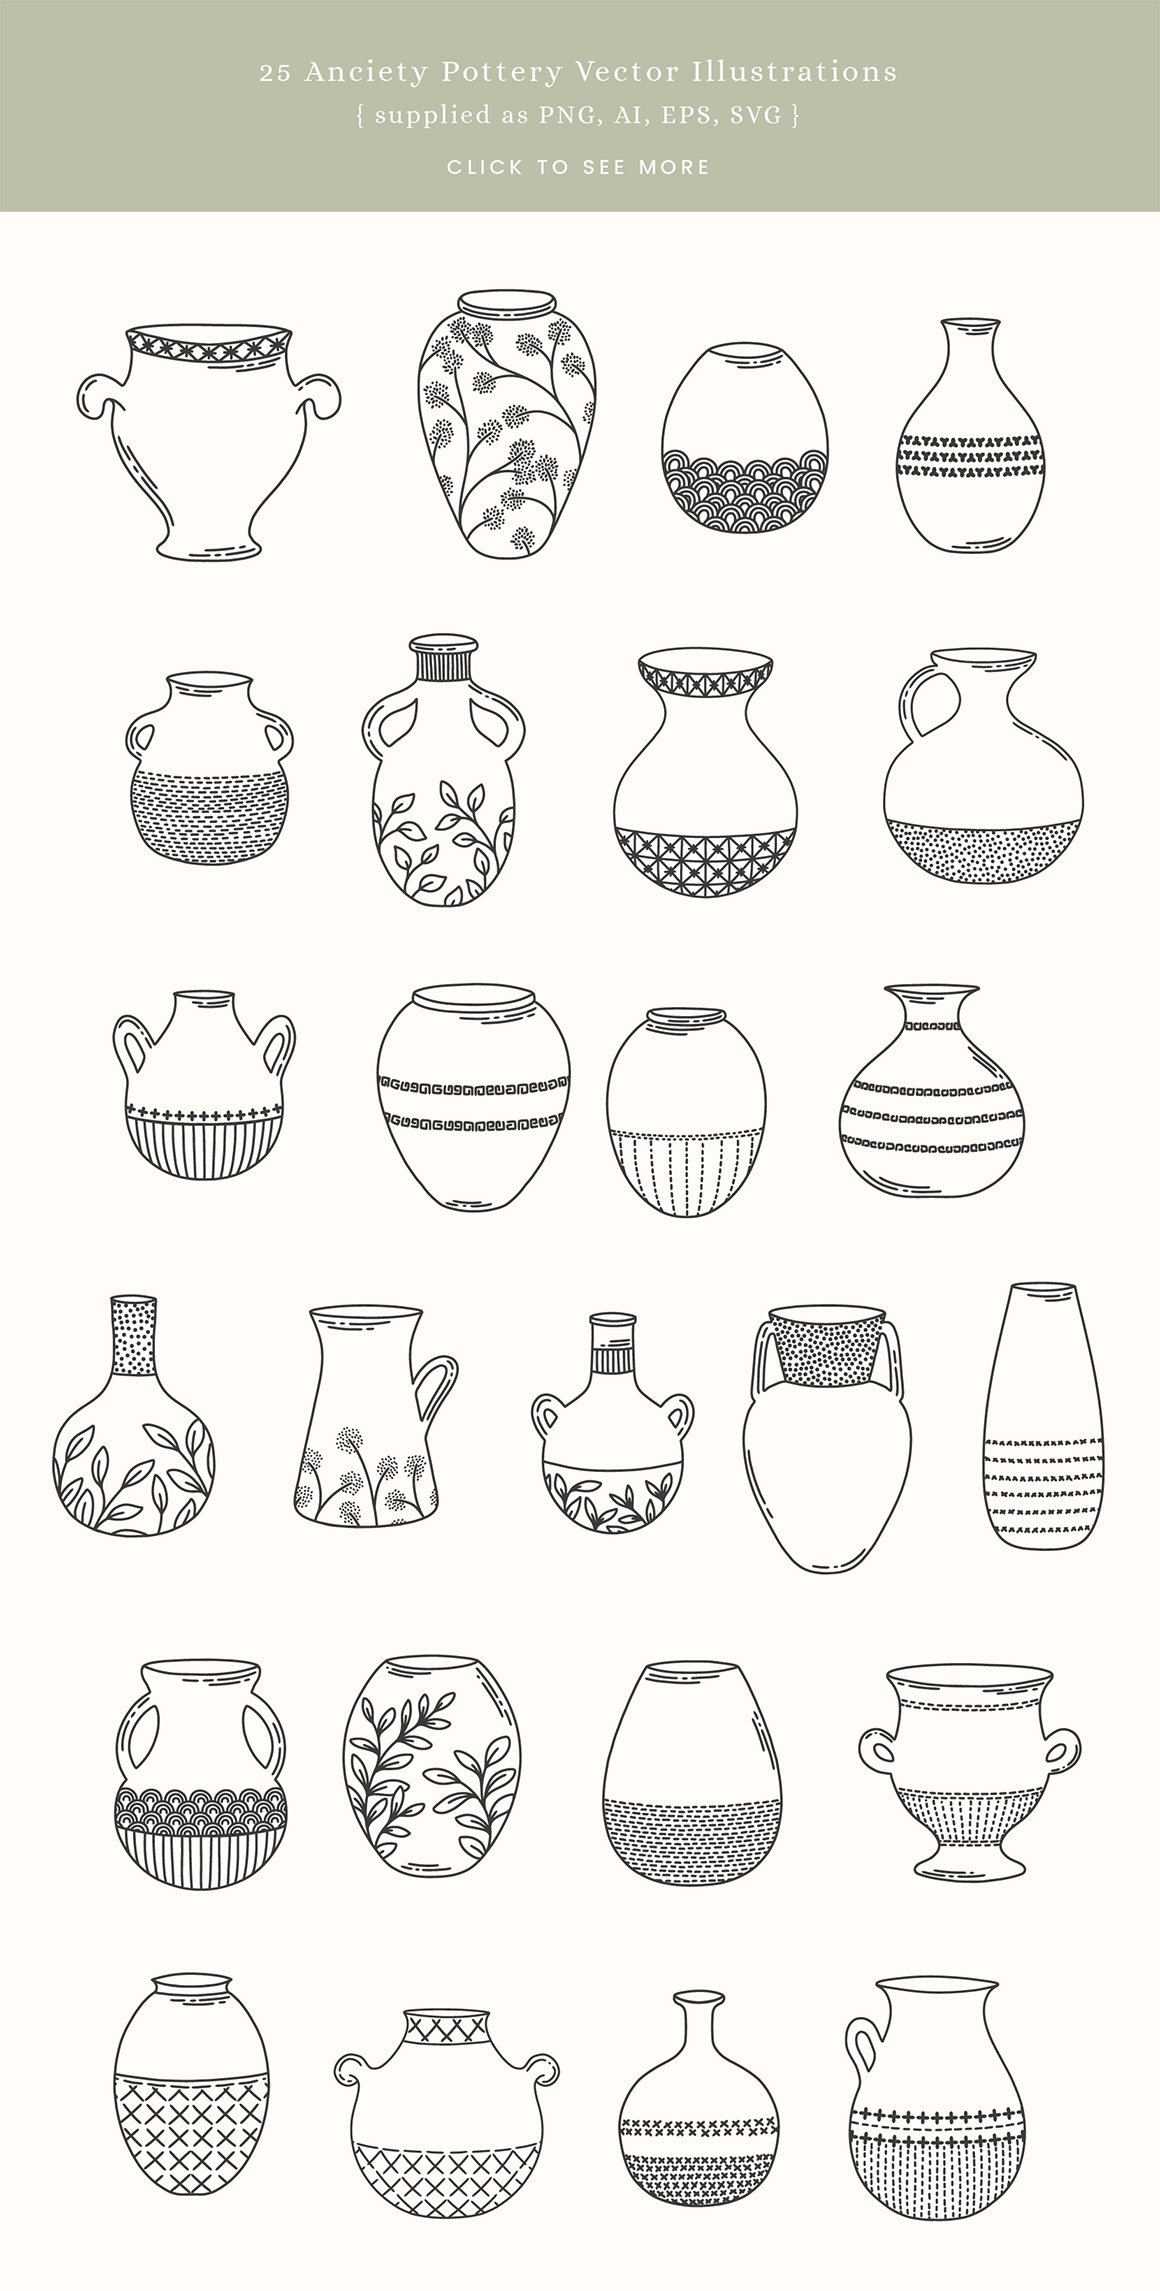 Pots & Plants Vector Illustrations